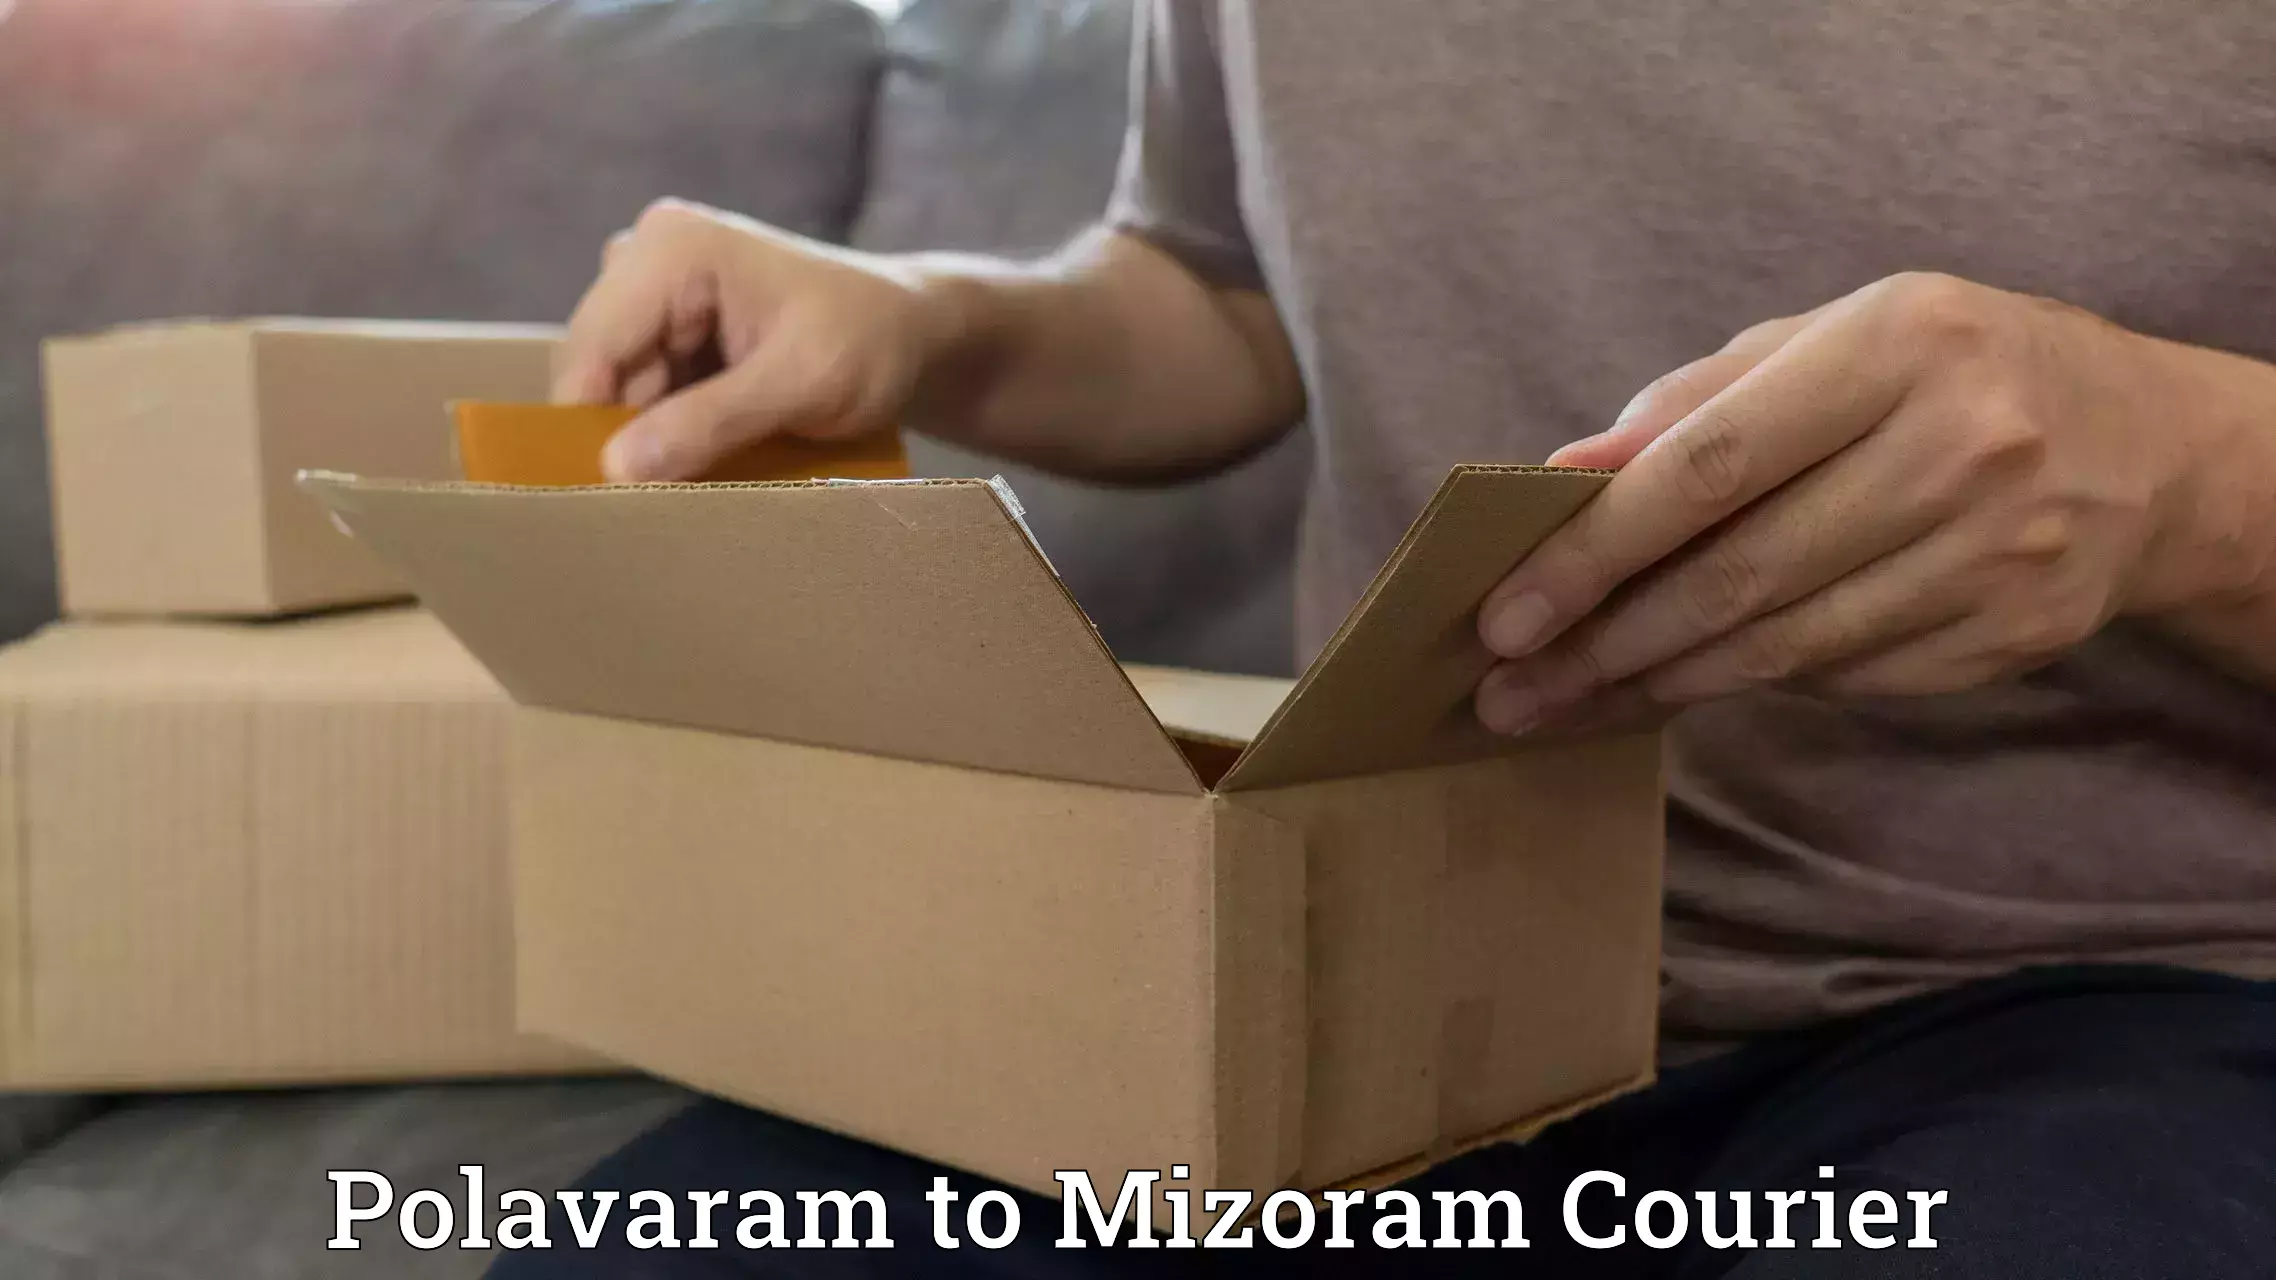 Specialized courier services Polavaram to Mizoram